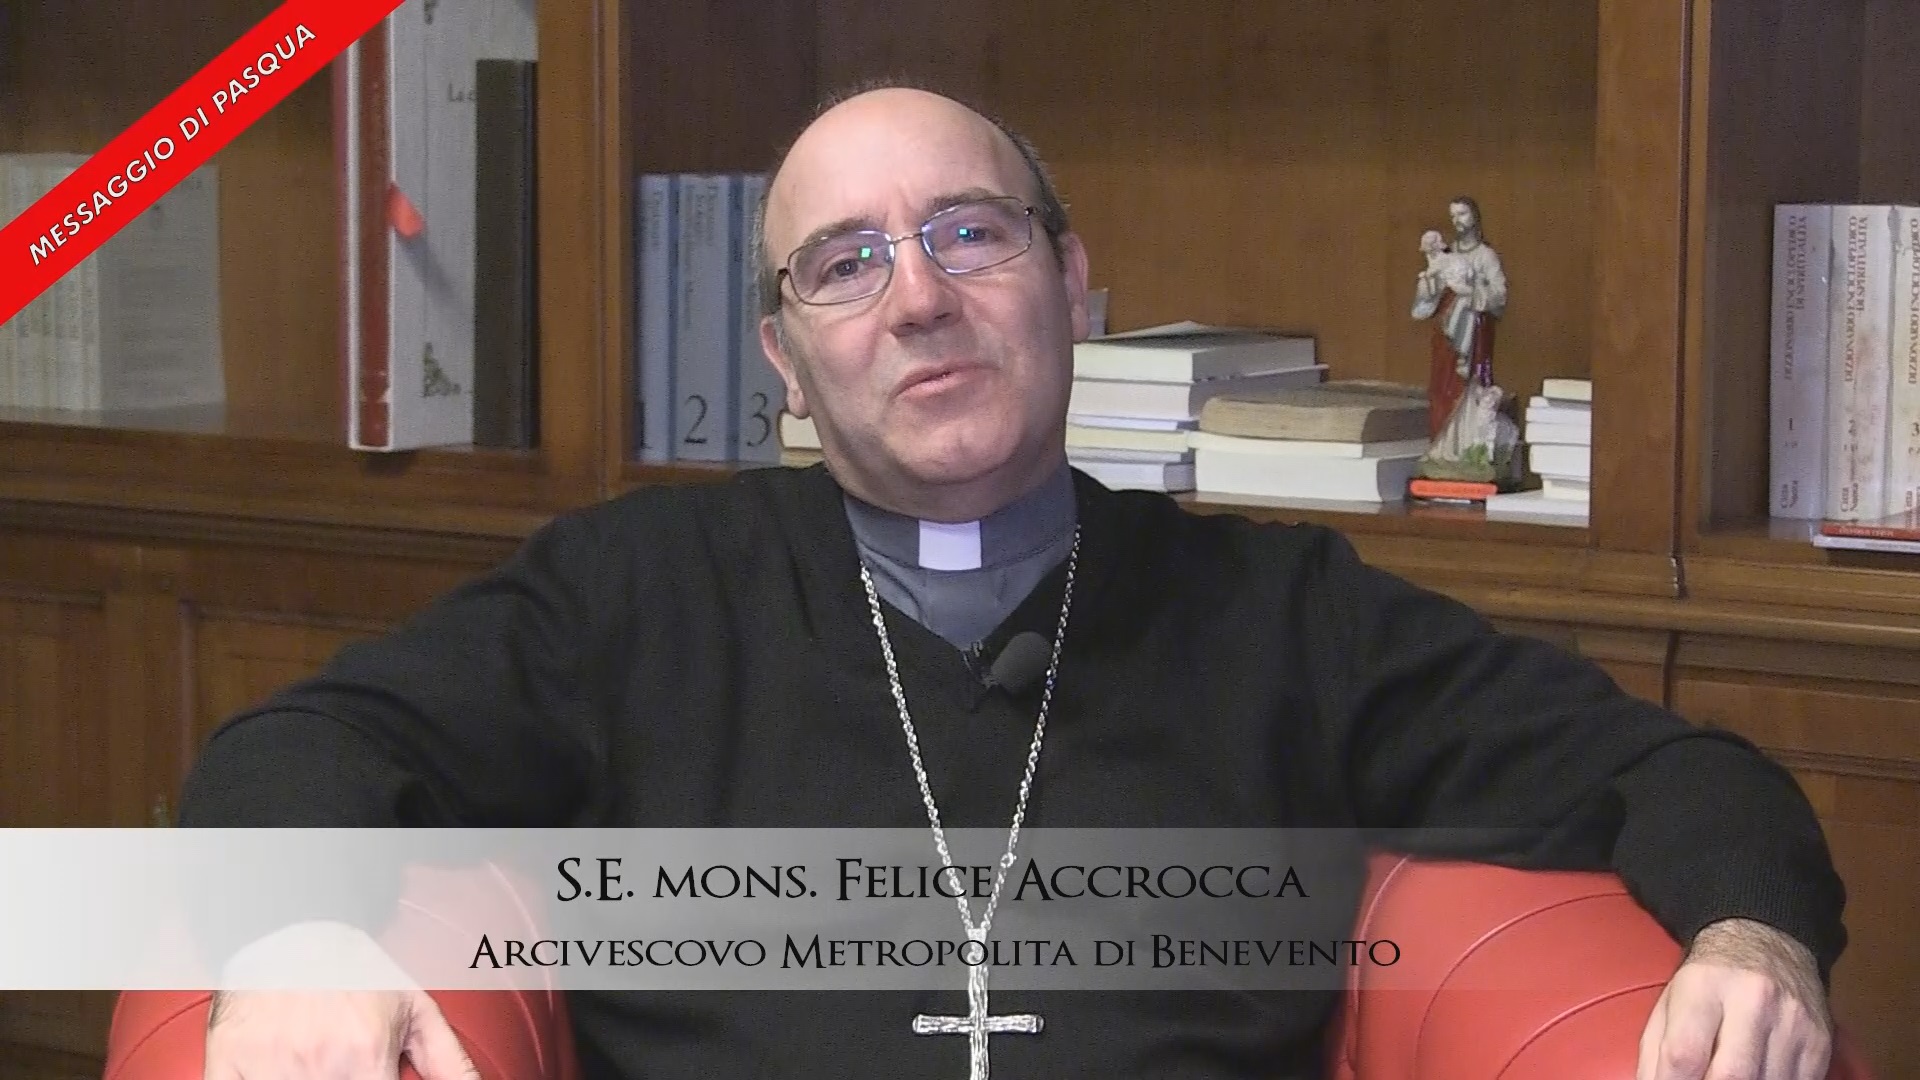 Benevento| “Per tutti c’è la possibilità di riscatto”, il messaggio pasquale del Vescovo Accrocca